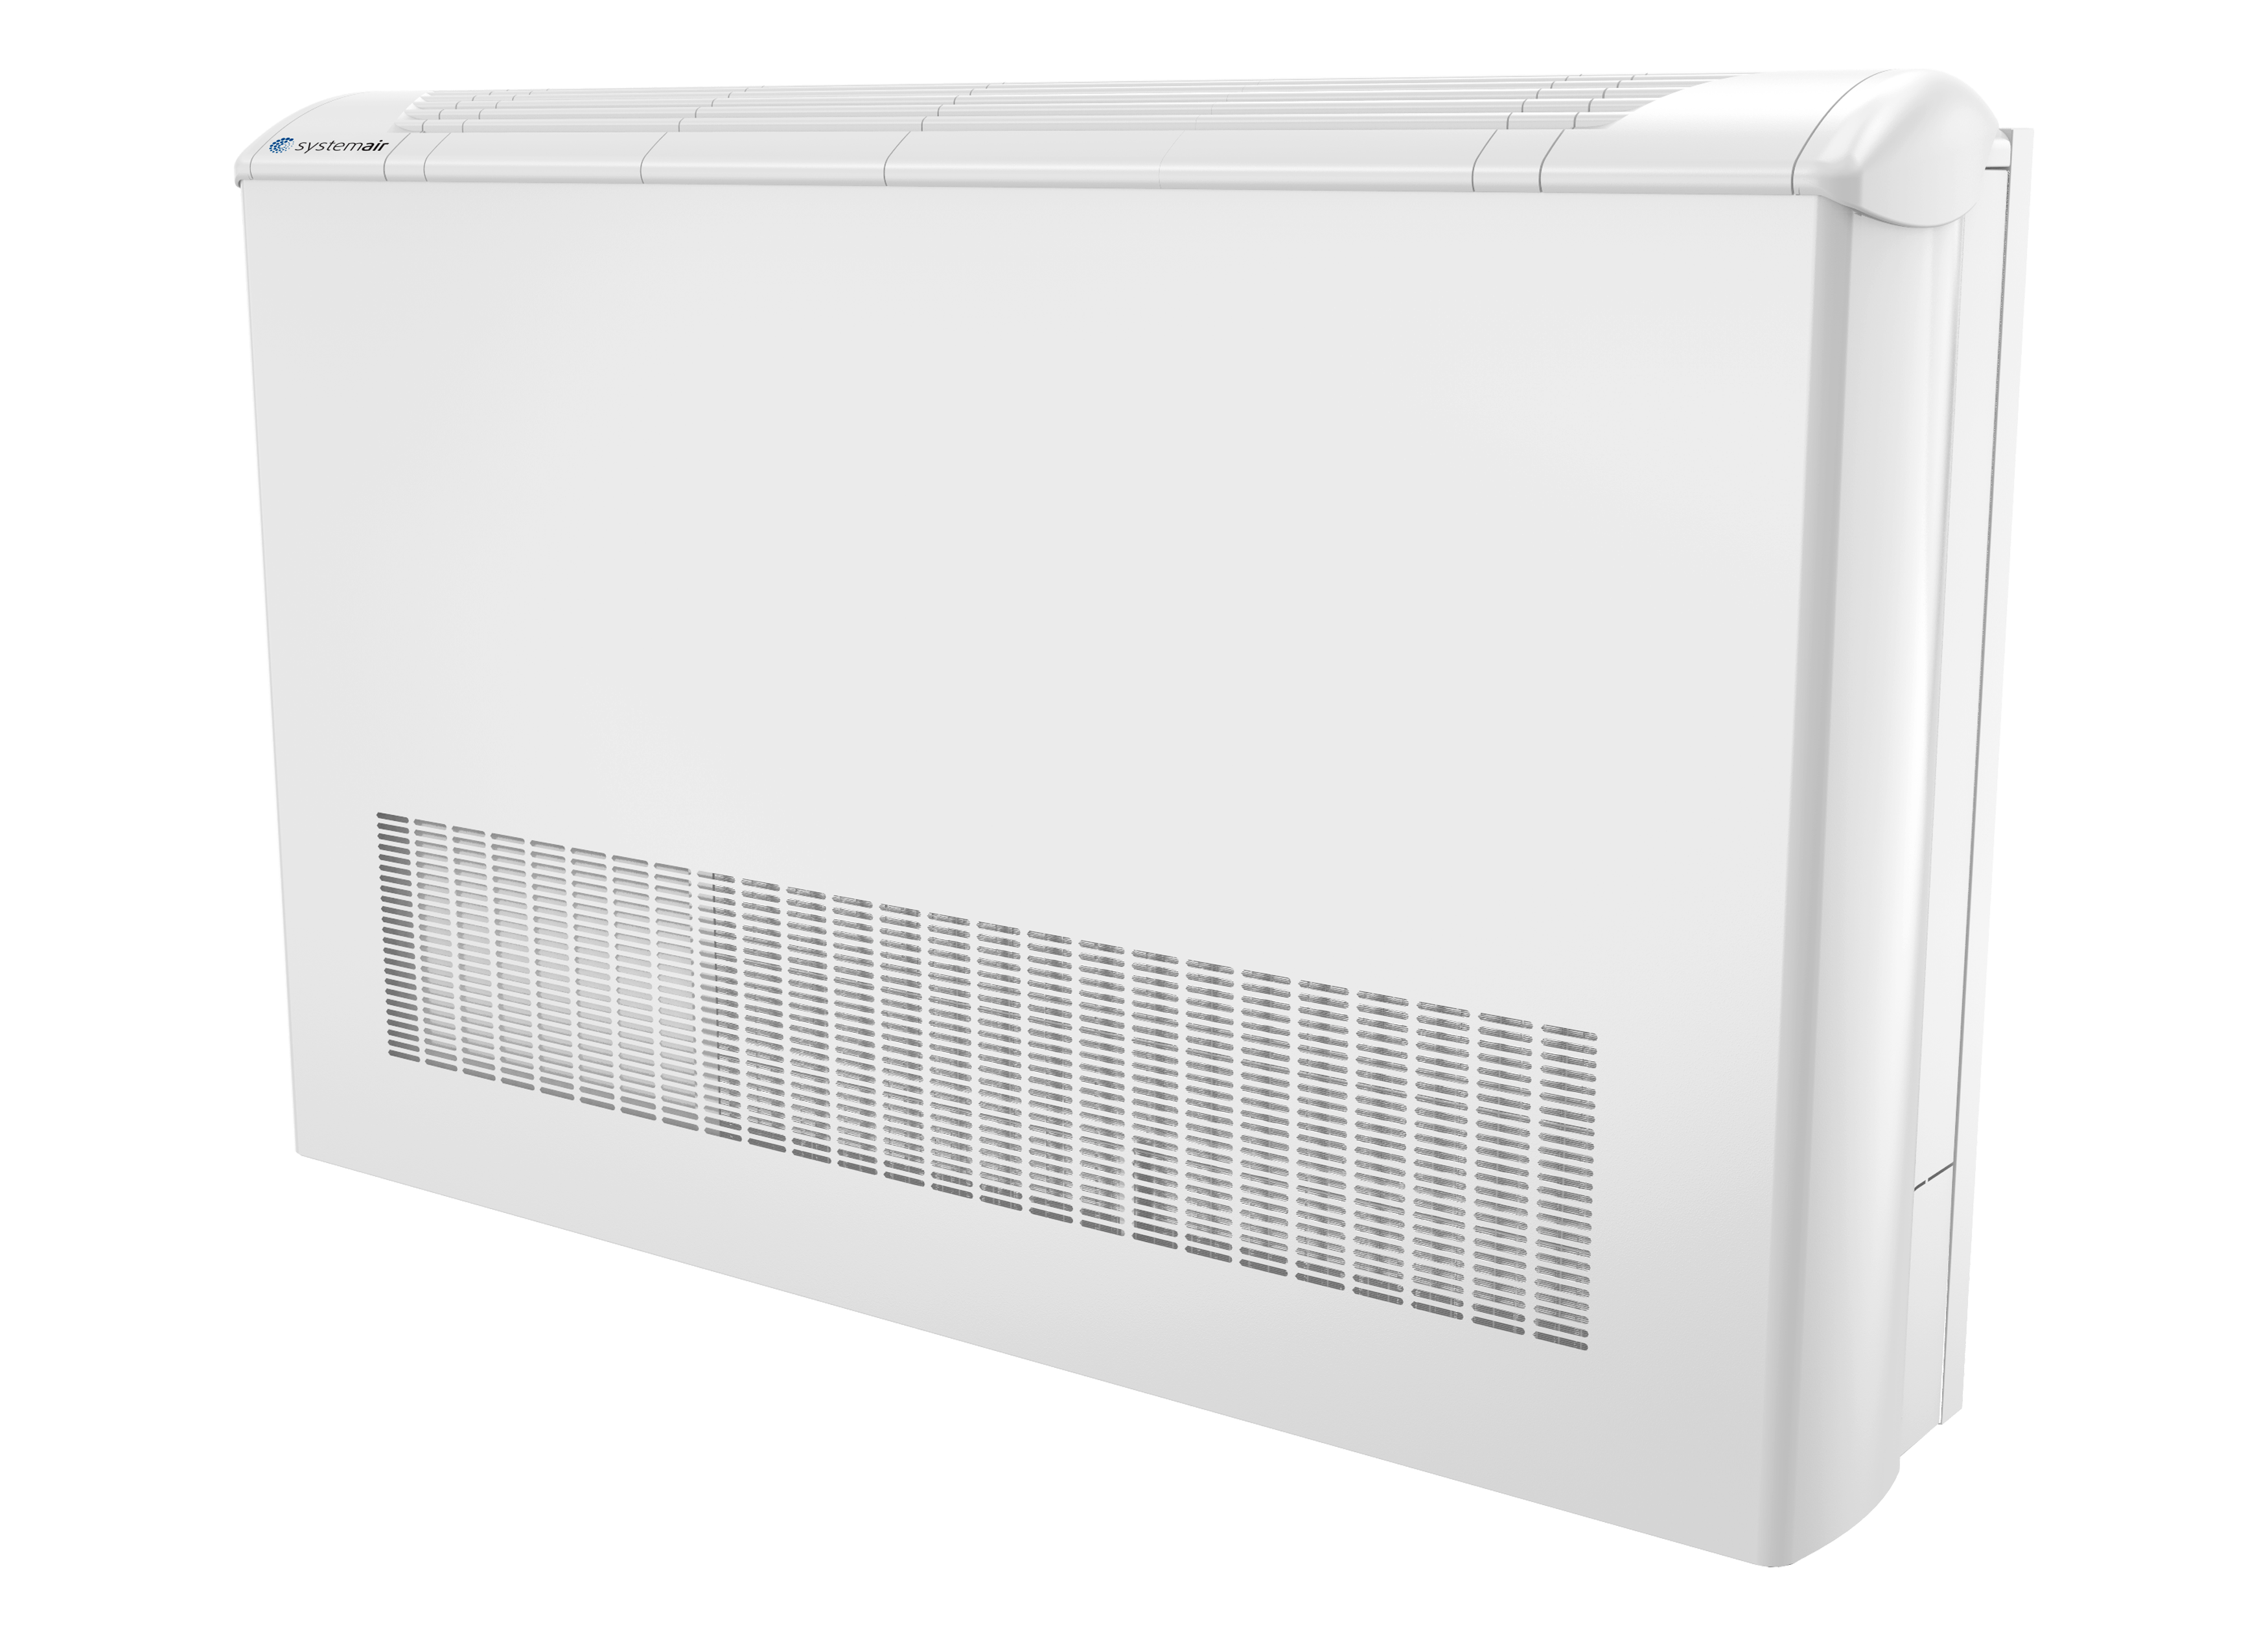 SYSCW-AR R513A - Pompy ciepła WSHP do pętli wodnej - Urządzenia klimatyzacyjne - Produkty - Systemair